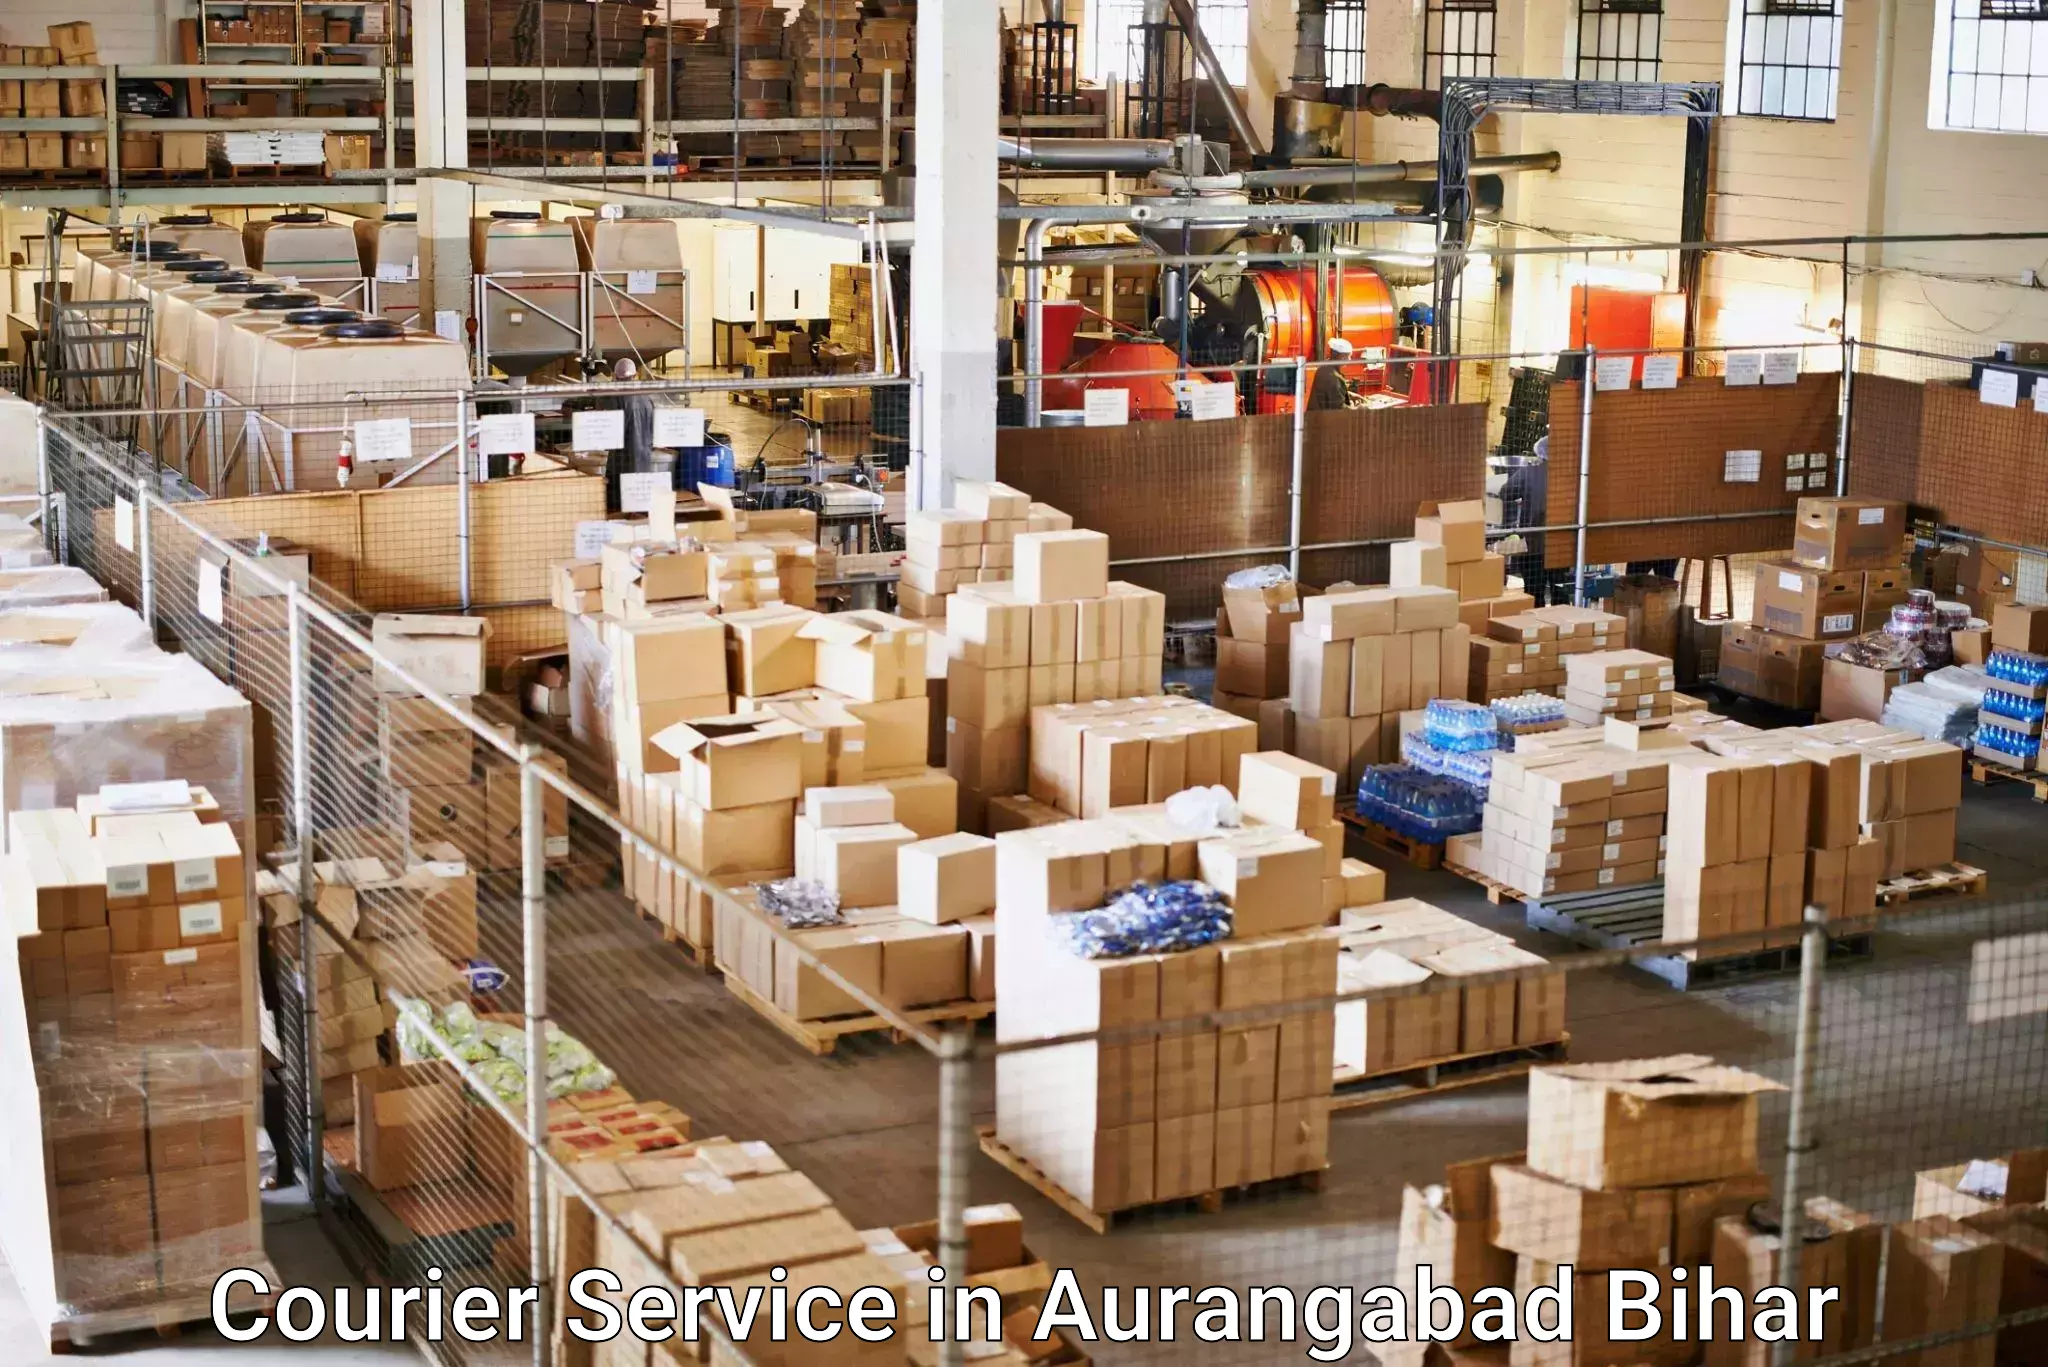 Speedy delivery service in Aurangabad Bihar